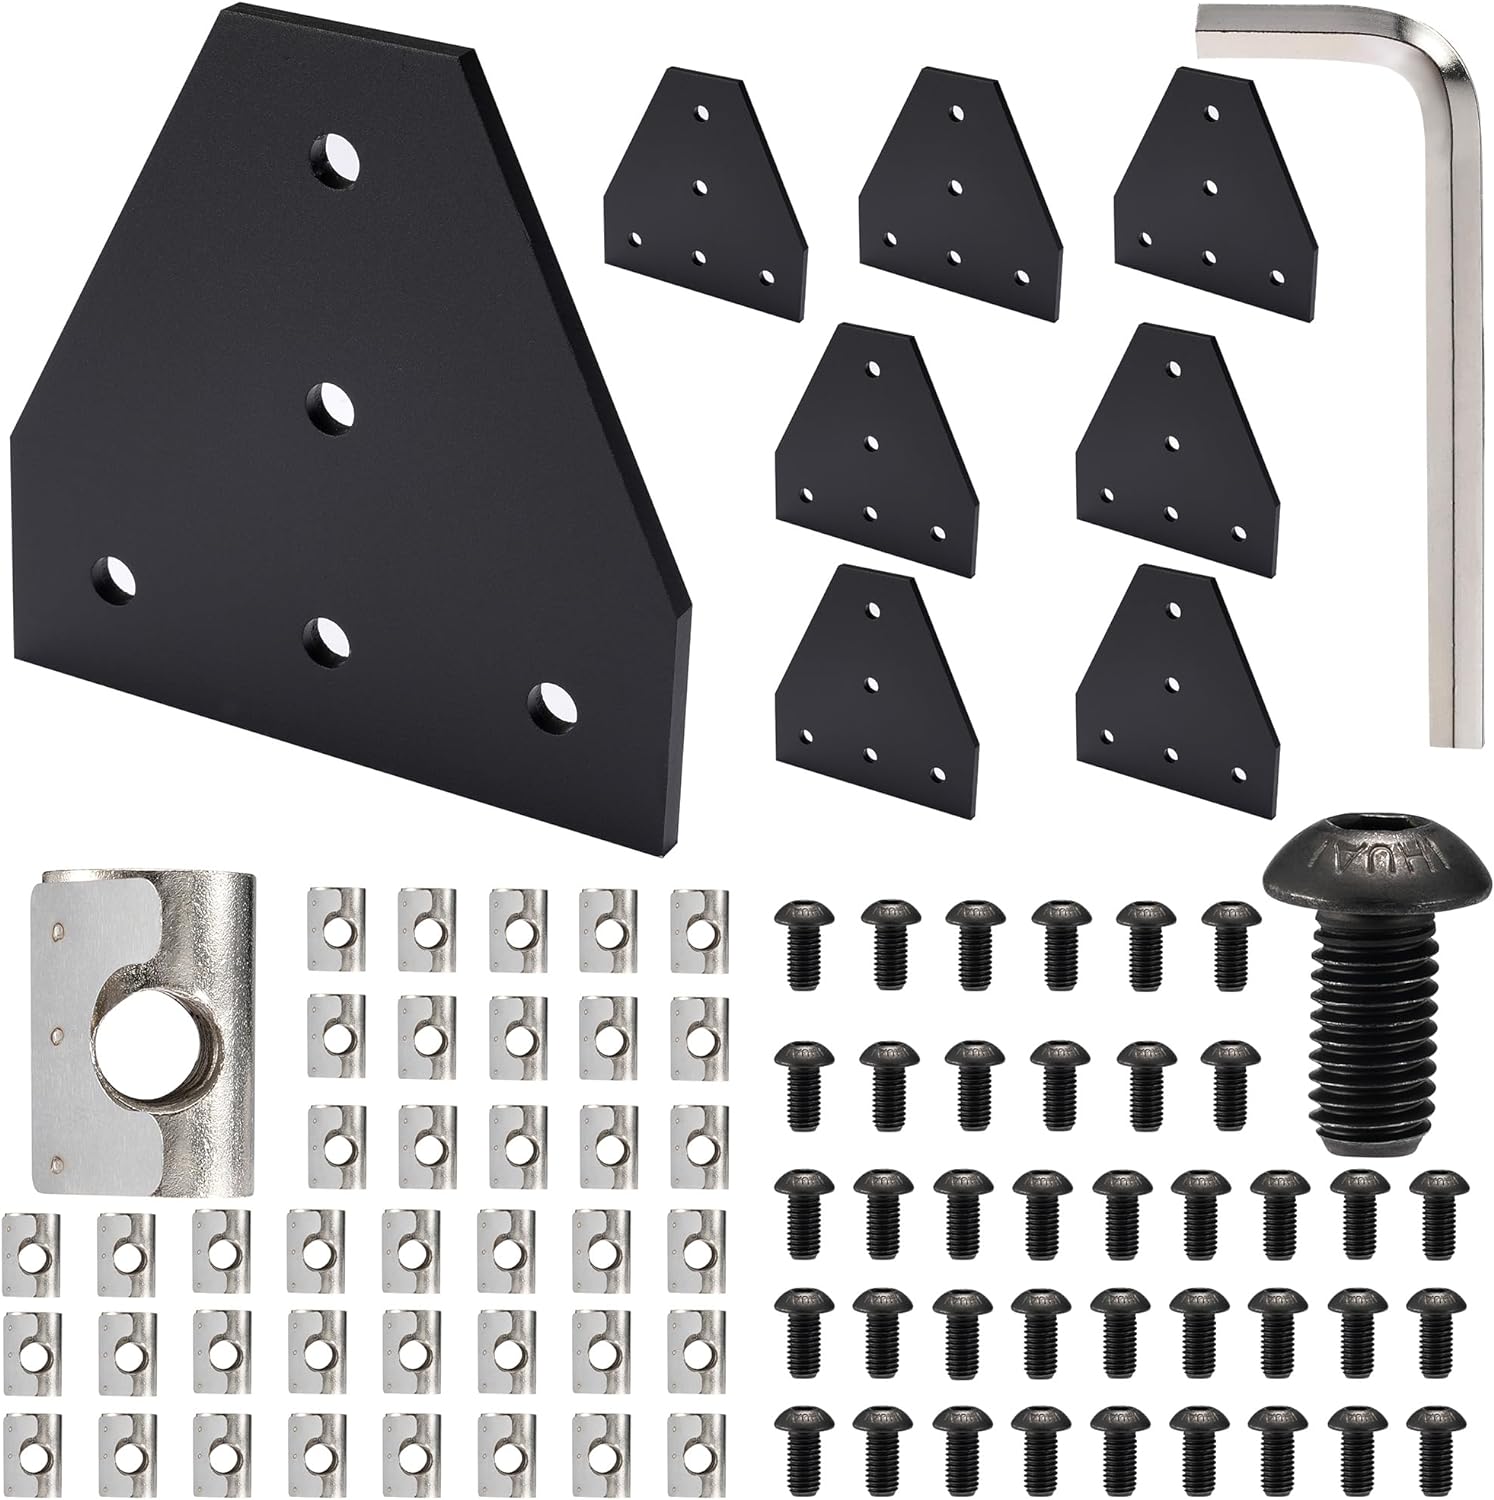 8 Sets T-Shape Corner Joint Plate Set Black for 4040 Series Aluminum Extrusion Profile with 40pcs M8 Spring T Nut 40pcs M8 Screw Bolt 1pcs Wrench Aluminum Rail 3D Printer Accessories